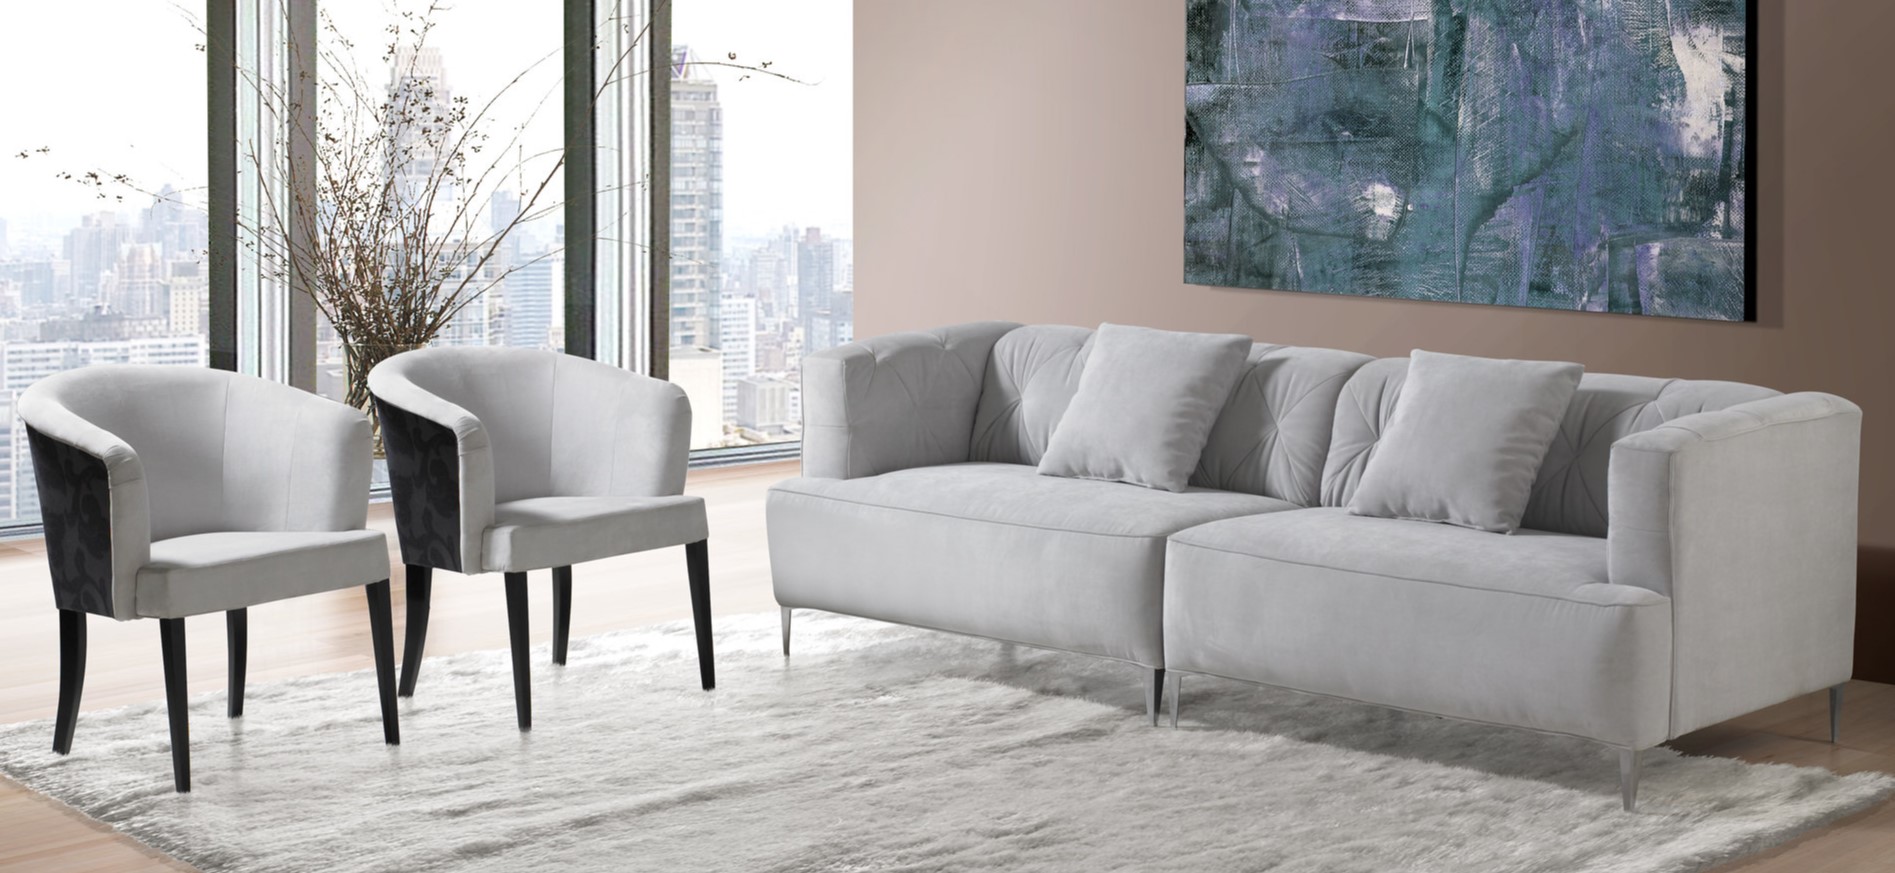 Под цвет обивки дивана можно подобрать стильные кресла для гостиной